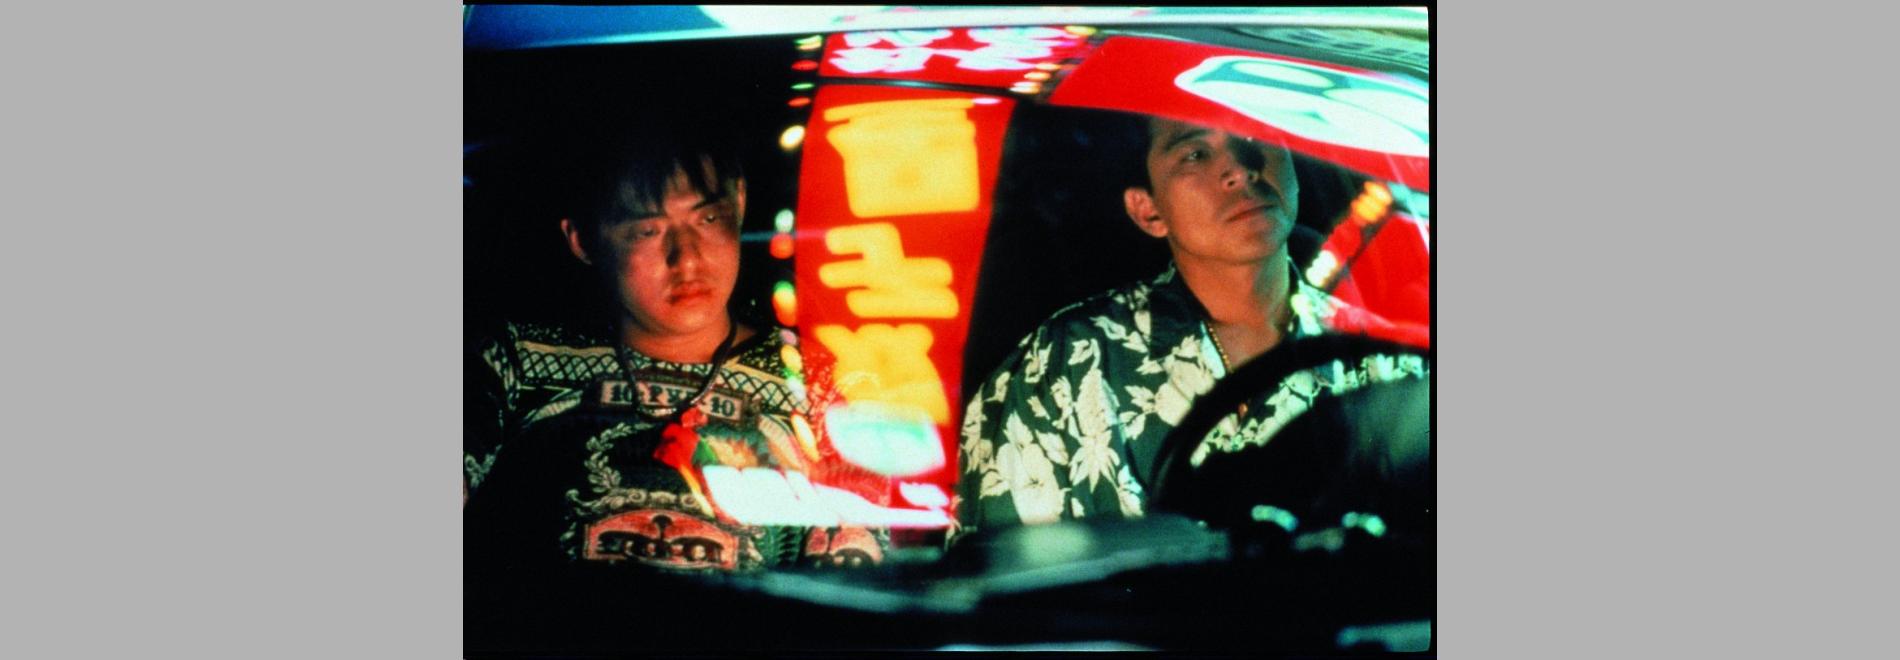 Nan guo zai jian, nan guo / Adéu sud, adéu (Hou Hsiao-hsien, 1996)